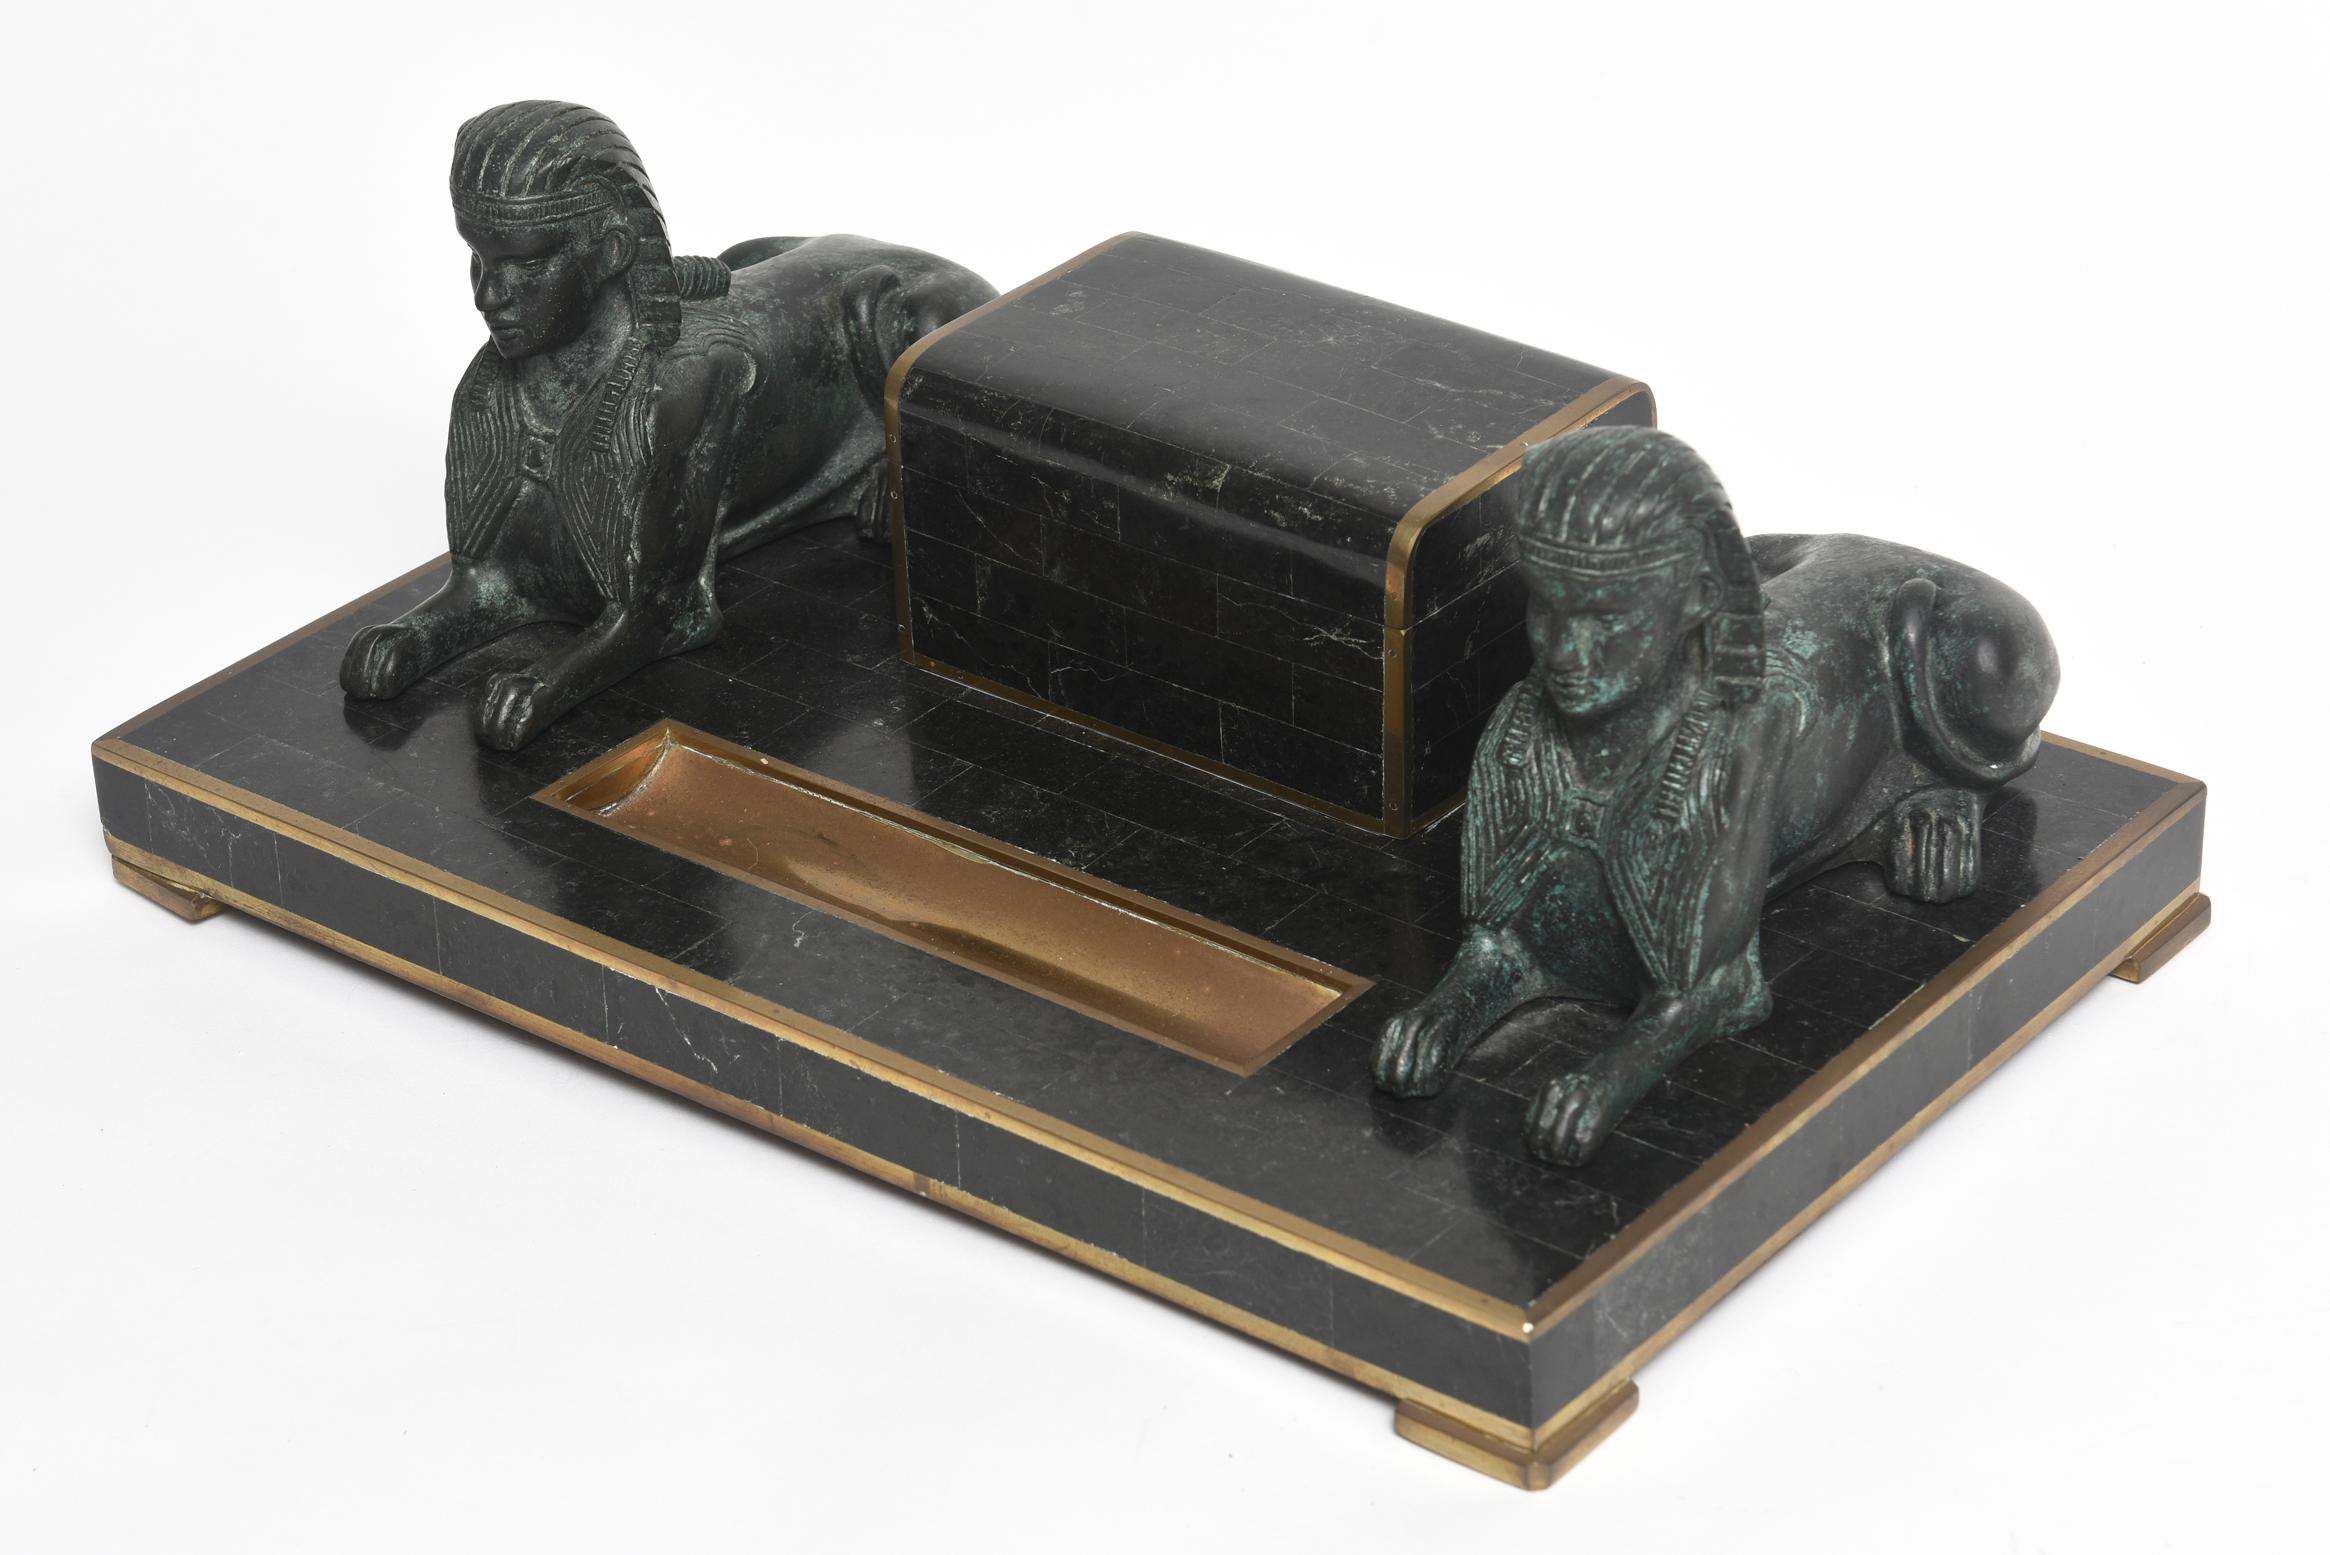 Maitland-Smith Egyptian-Revival-Tischset mit einem Stempelkasten in Form eines Grabes und einer Sphinx auf beiden Seiten. Die Vorderseite ist mit einer versenkten Stiftablage ausgestattet. Das Stück ist aus mosaikartigem schwarzem Marmor und Messing